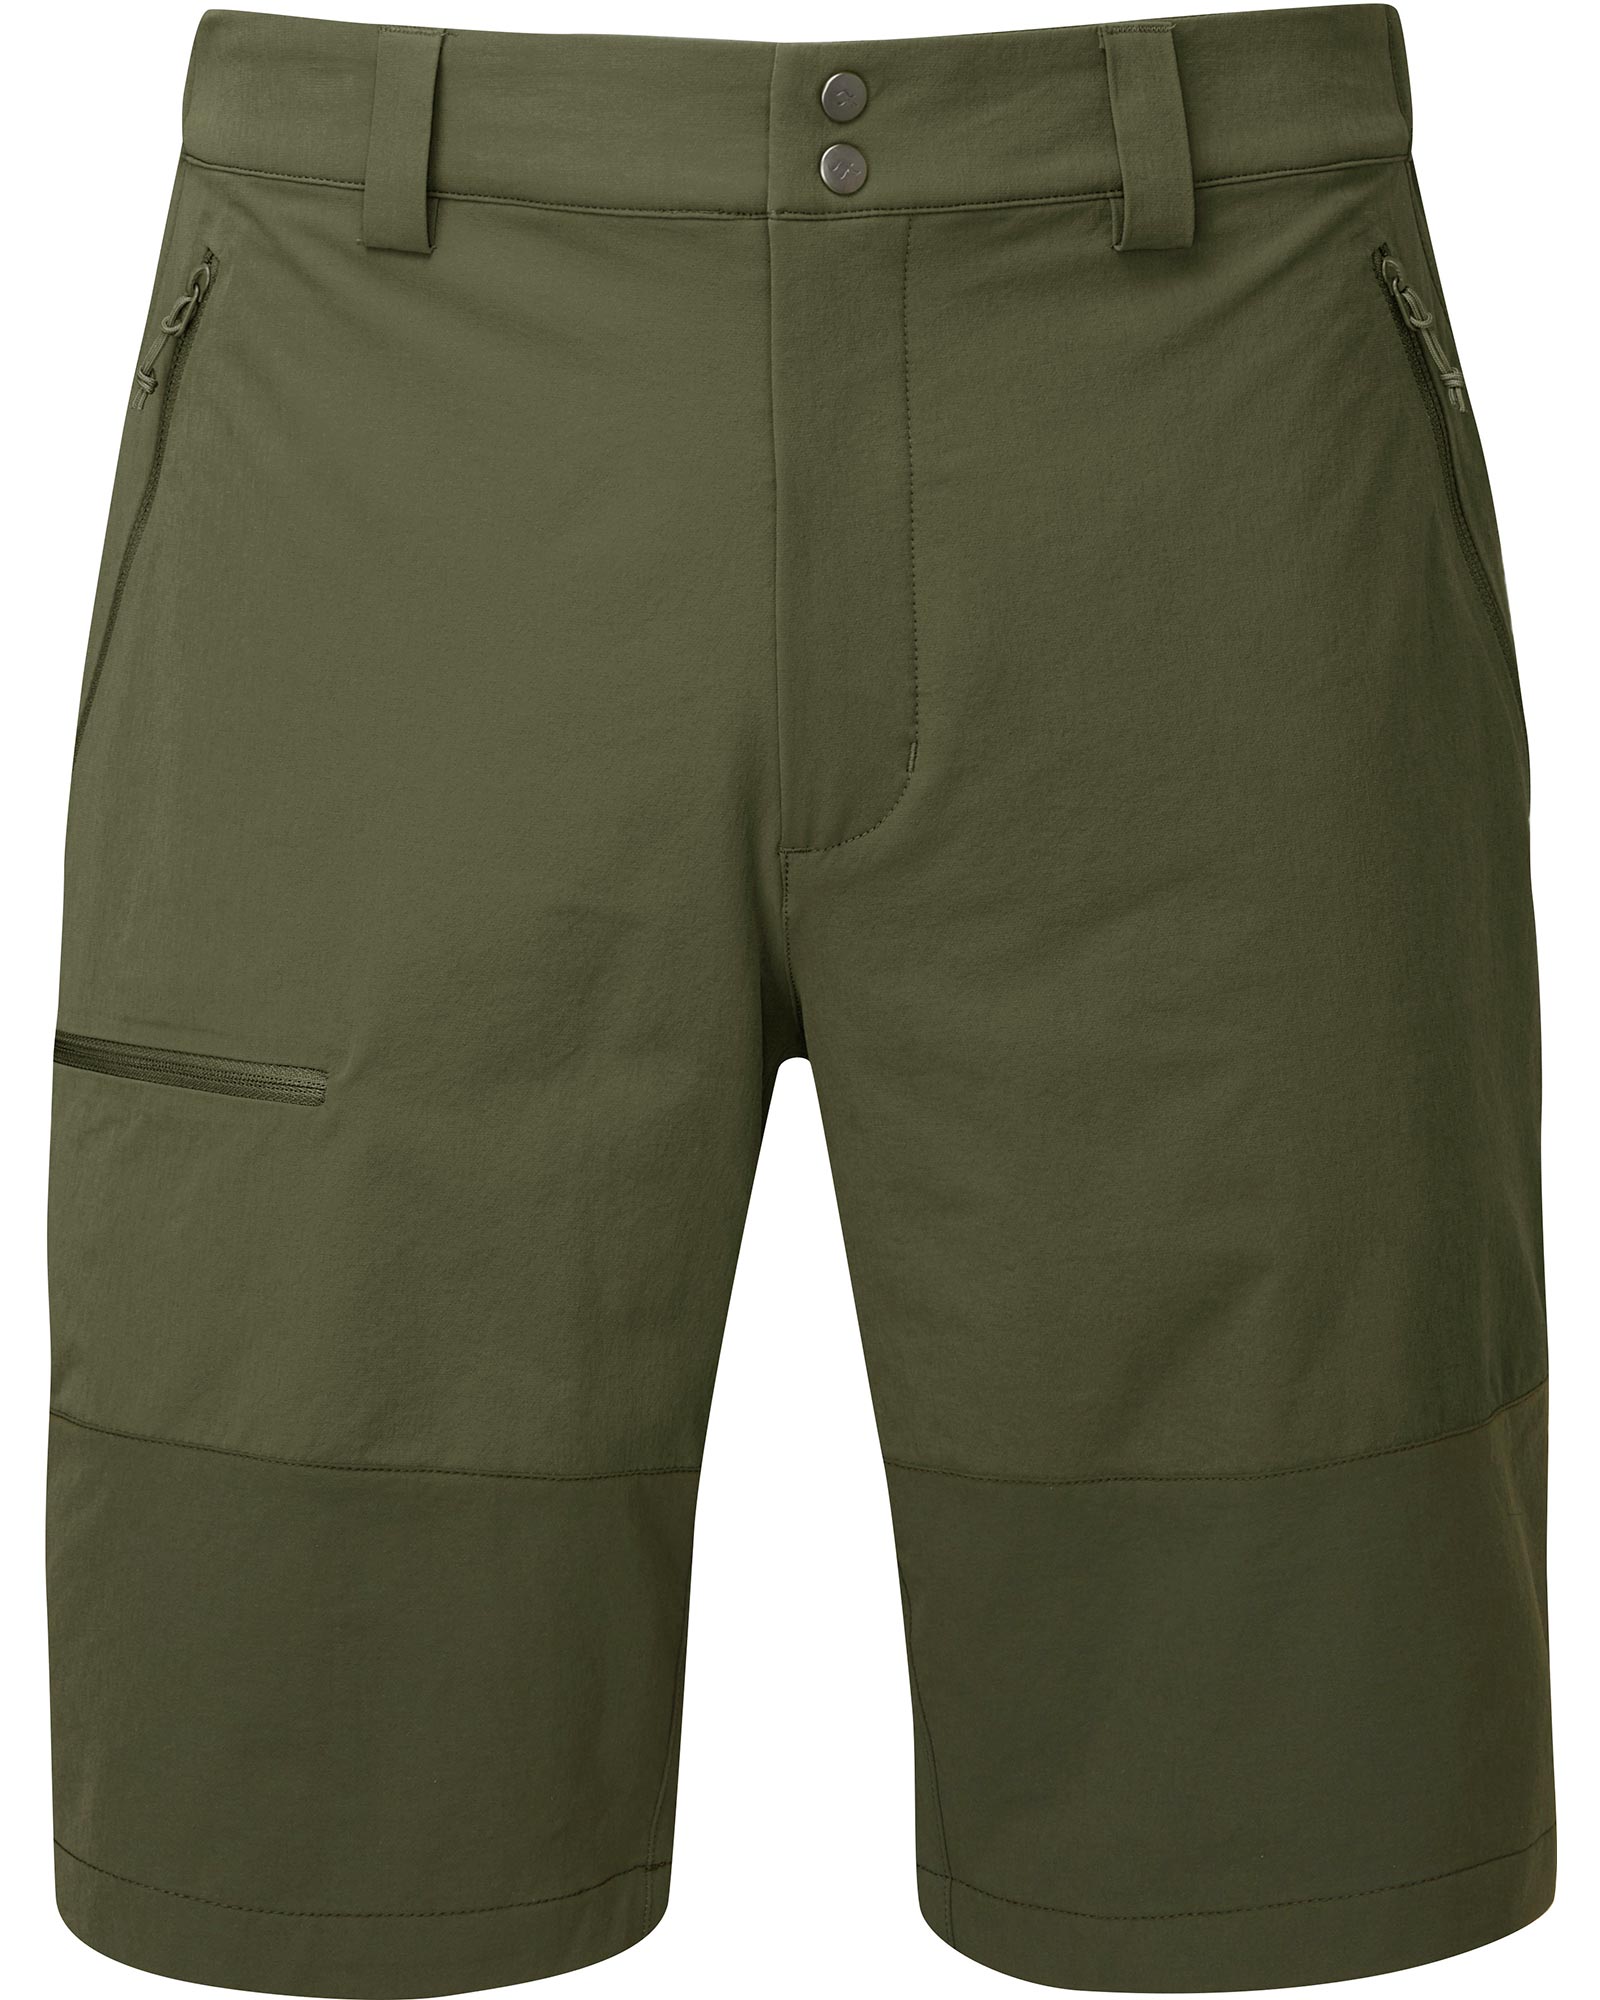 Rab Torque Mountain Men’s Shorts - Army 30"